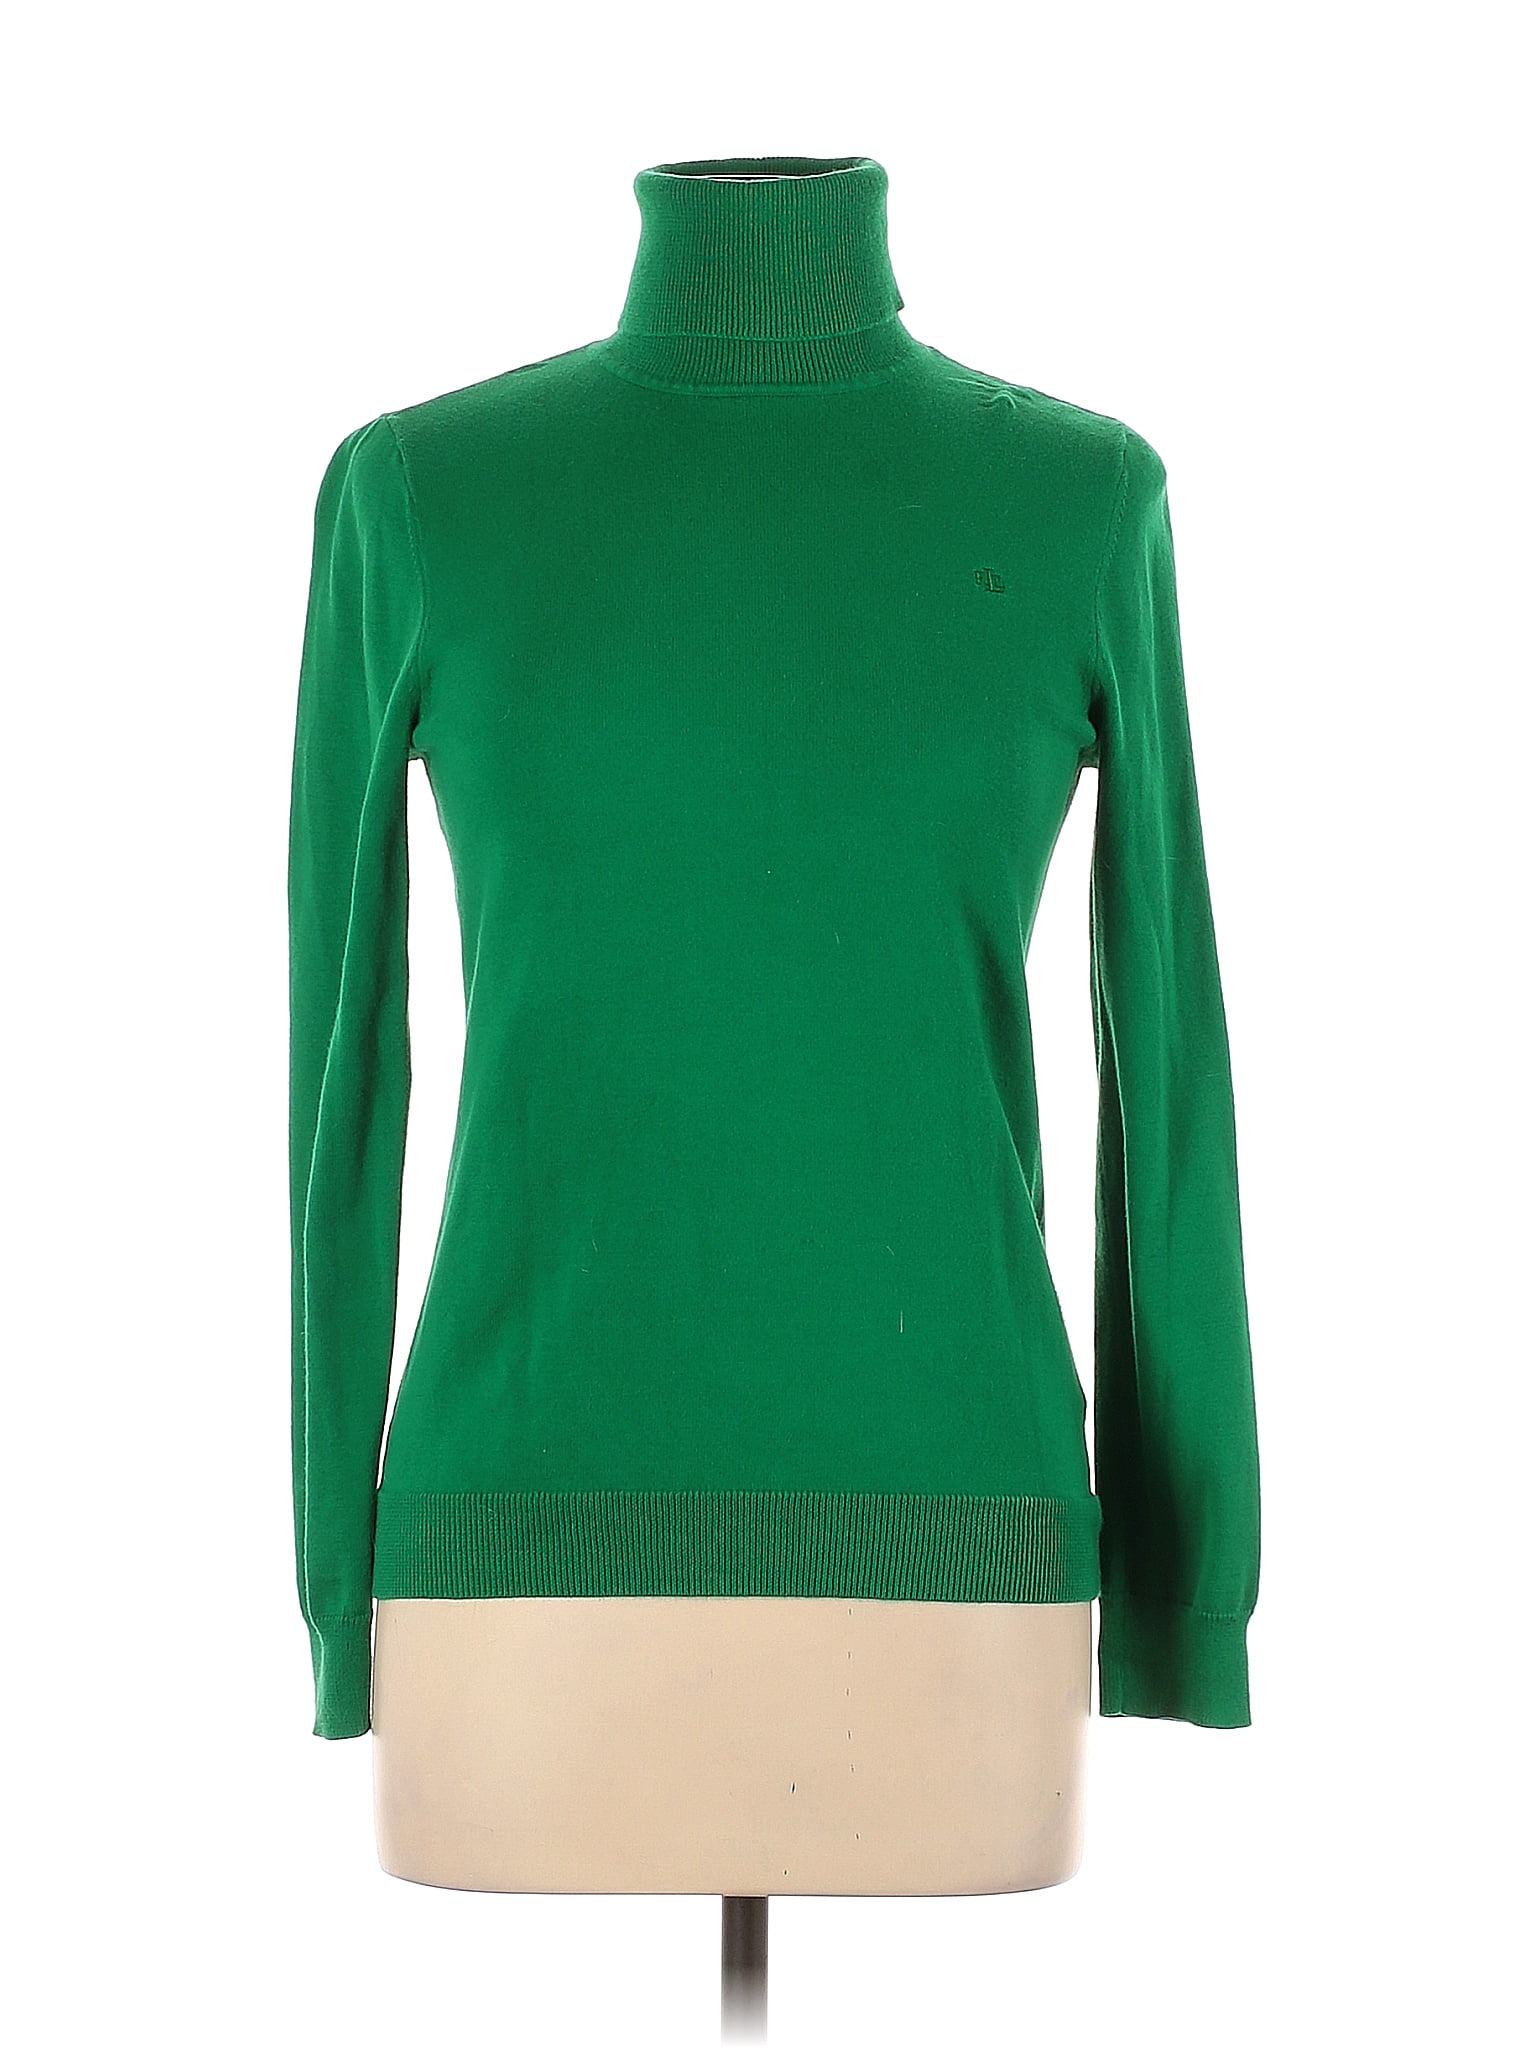 Lauren by Ralph Lauren 100% Cotton Color Block Solid Green Gray Turtleneck  Sweater Size S - 67% off